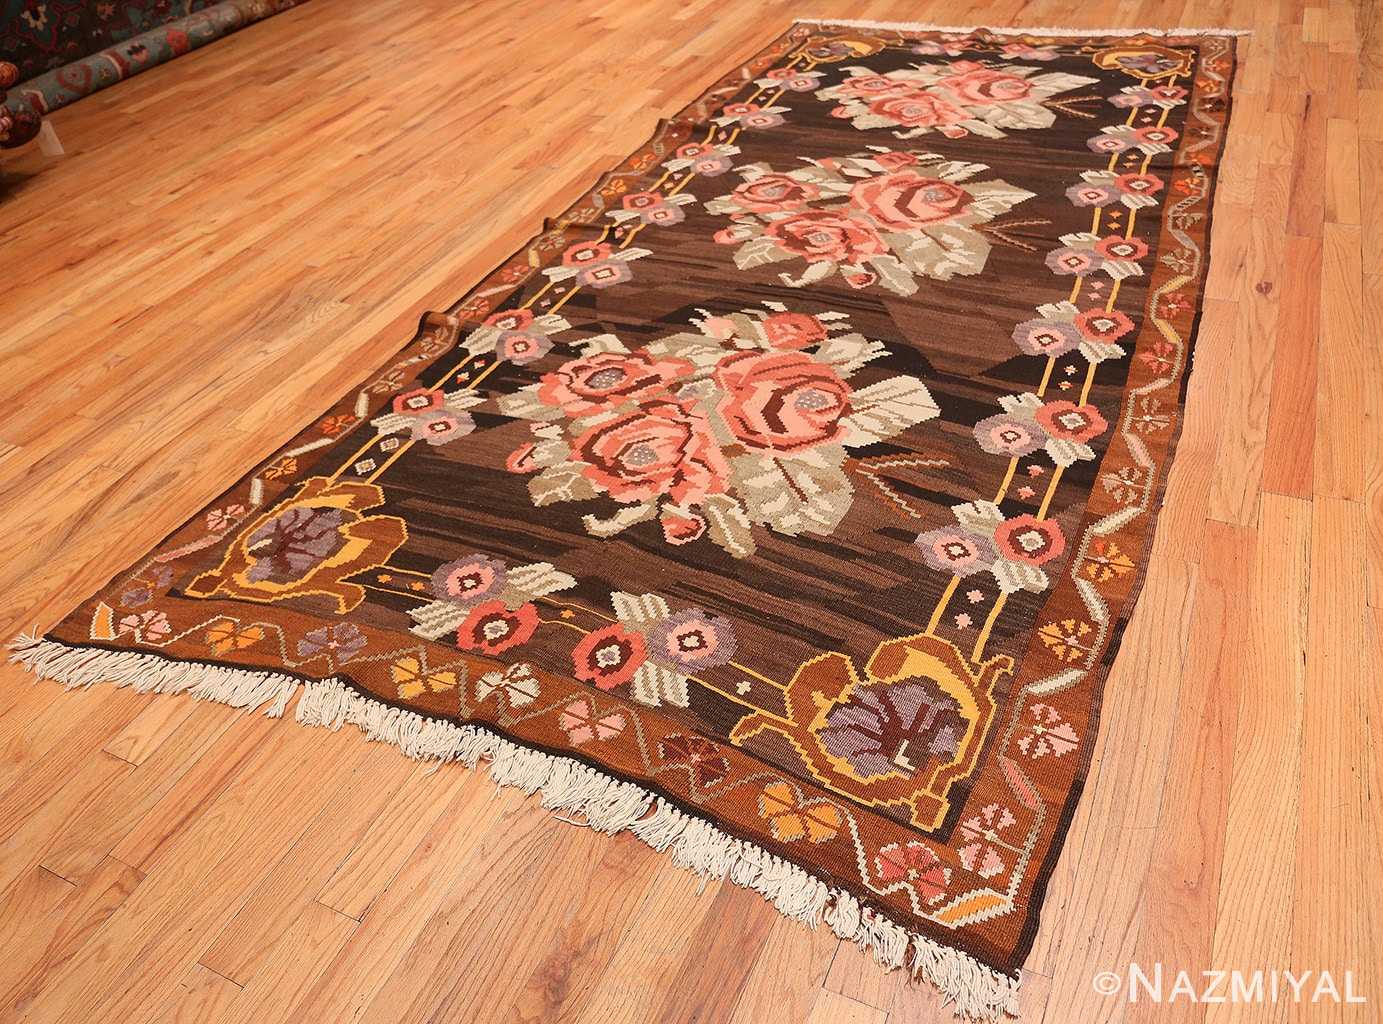 Full floral vintage Turkish Kilim rug 50476 by Nazmiyal